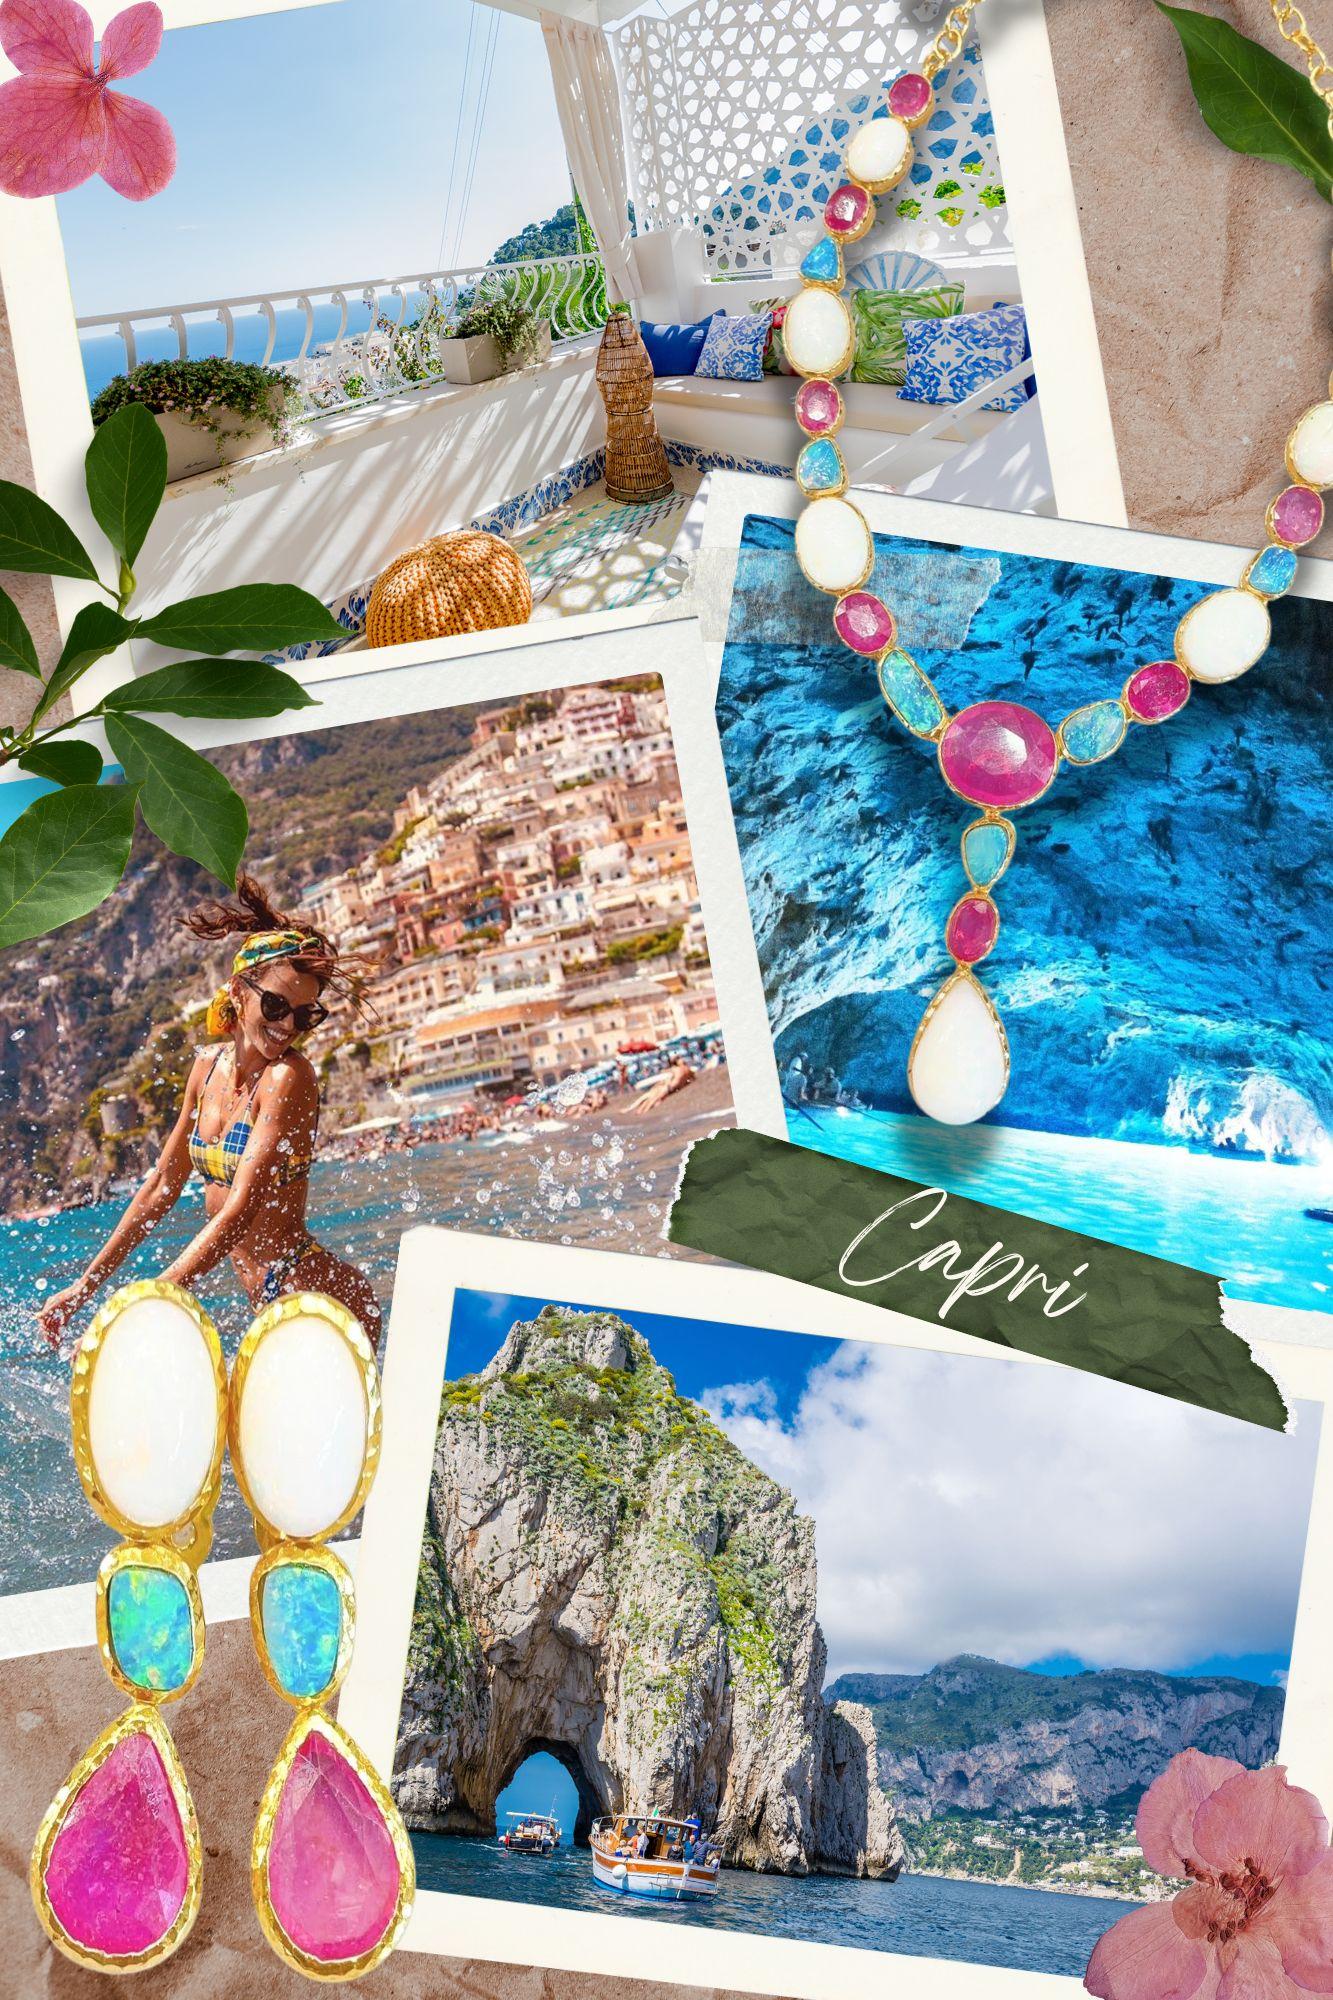 Bochic “Capri” Opal & Rose Cut Fancy Sapphire Earrings Set in 18k Gold & Silver For Sale 2